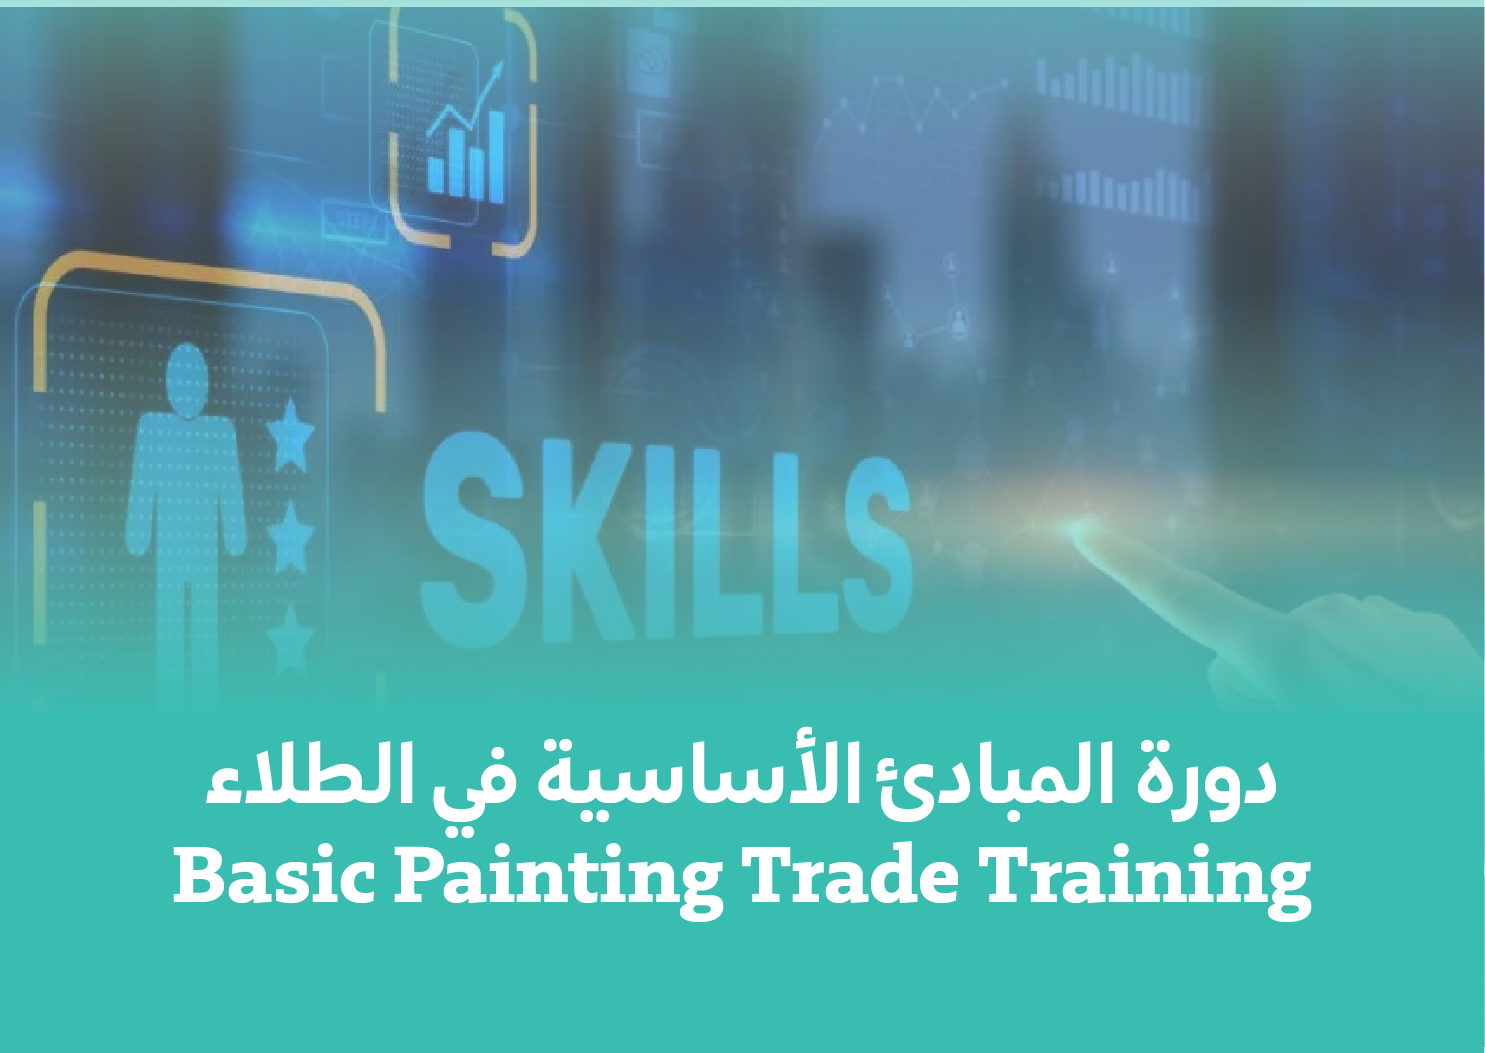 Basic Painting Trade Training